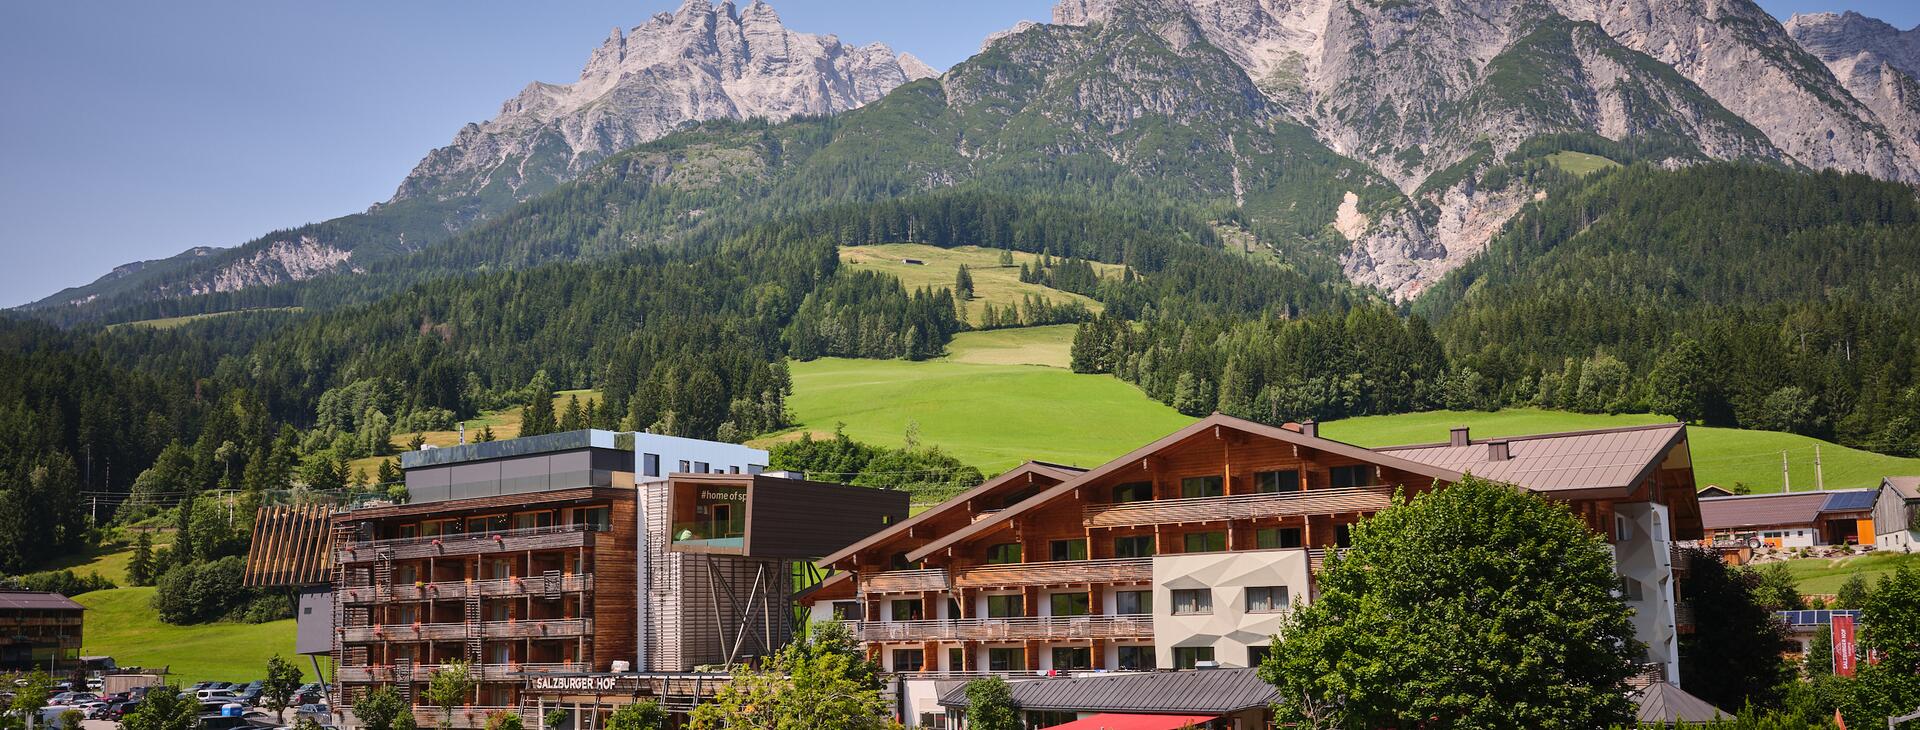 Hotel in den Bergen Salzburger Land